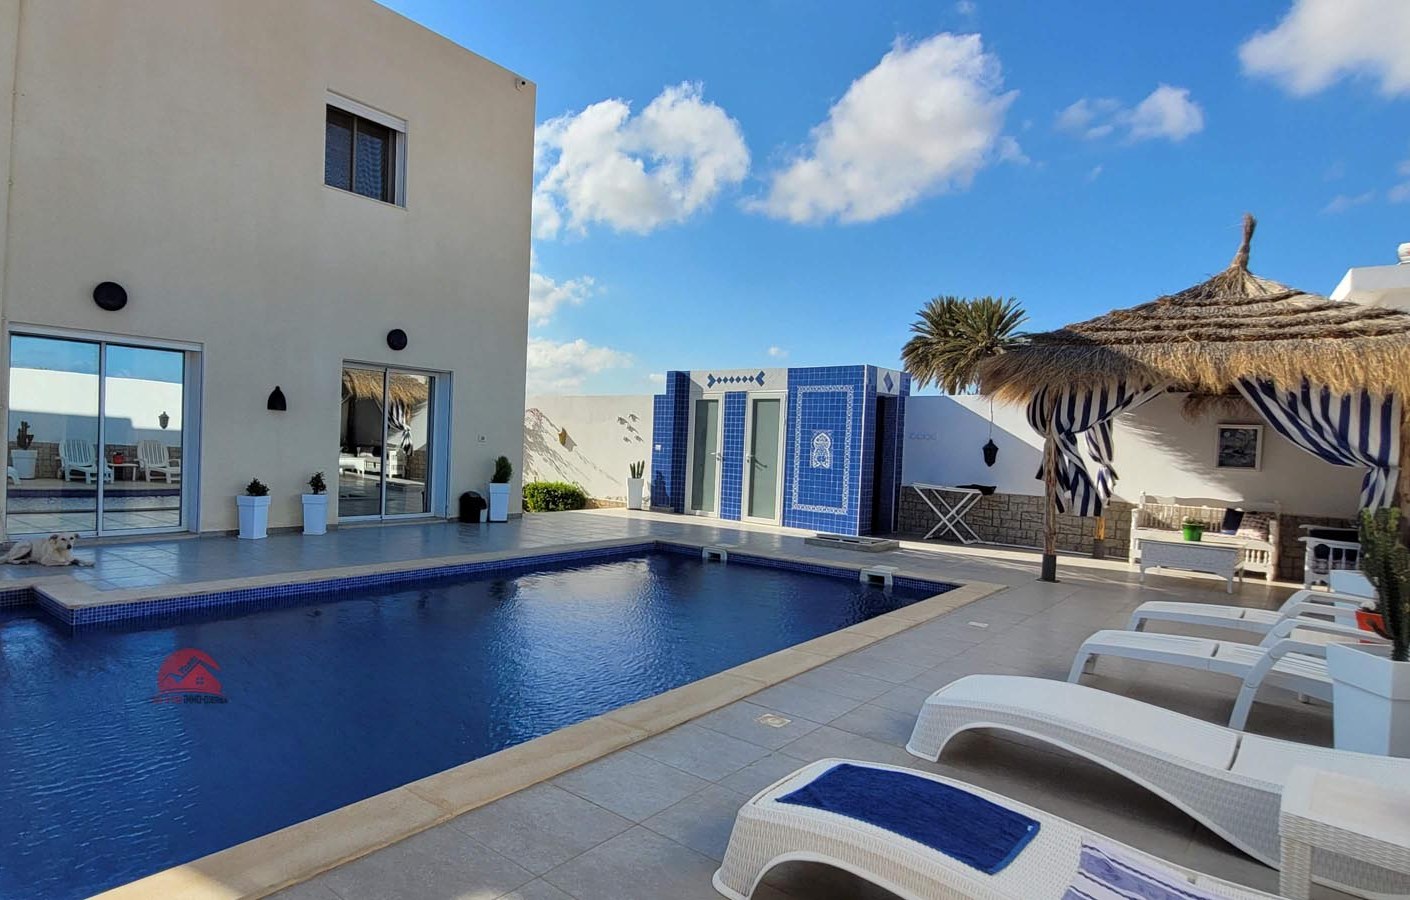 Vente villa meublée à Aghir Djerba - Réf V672